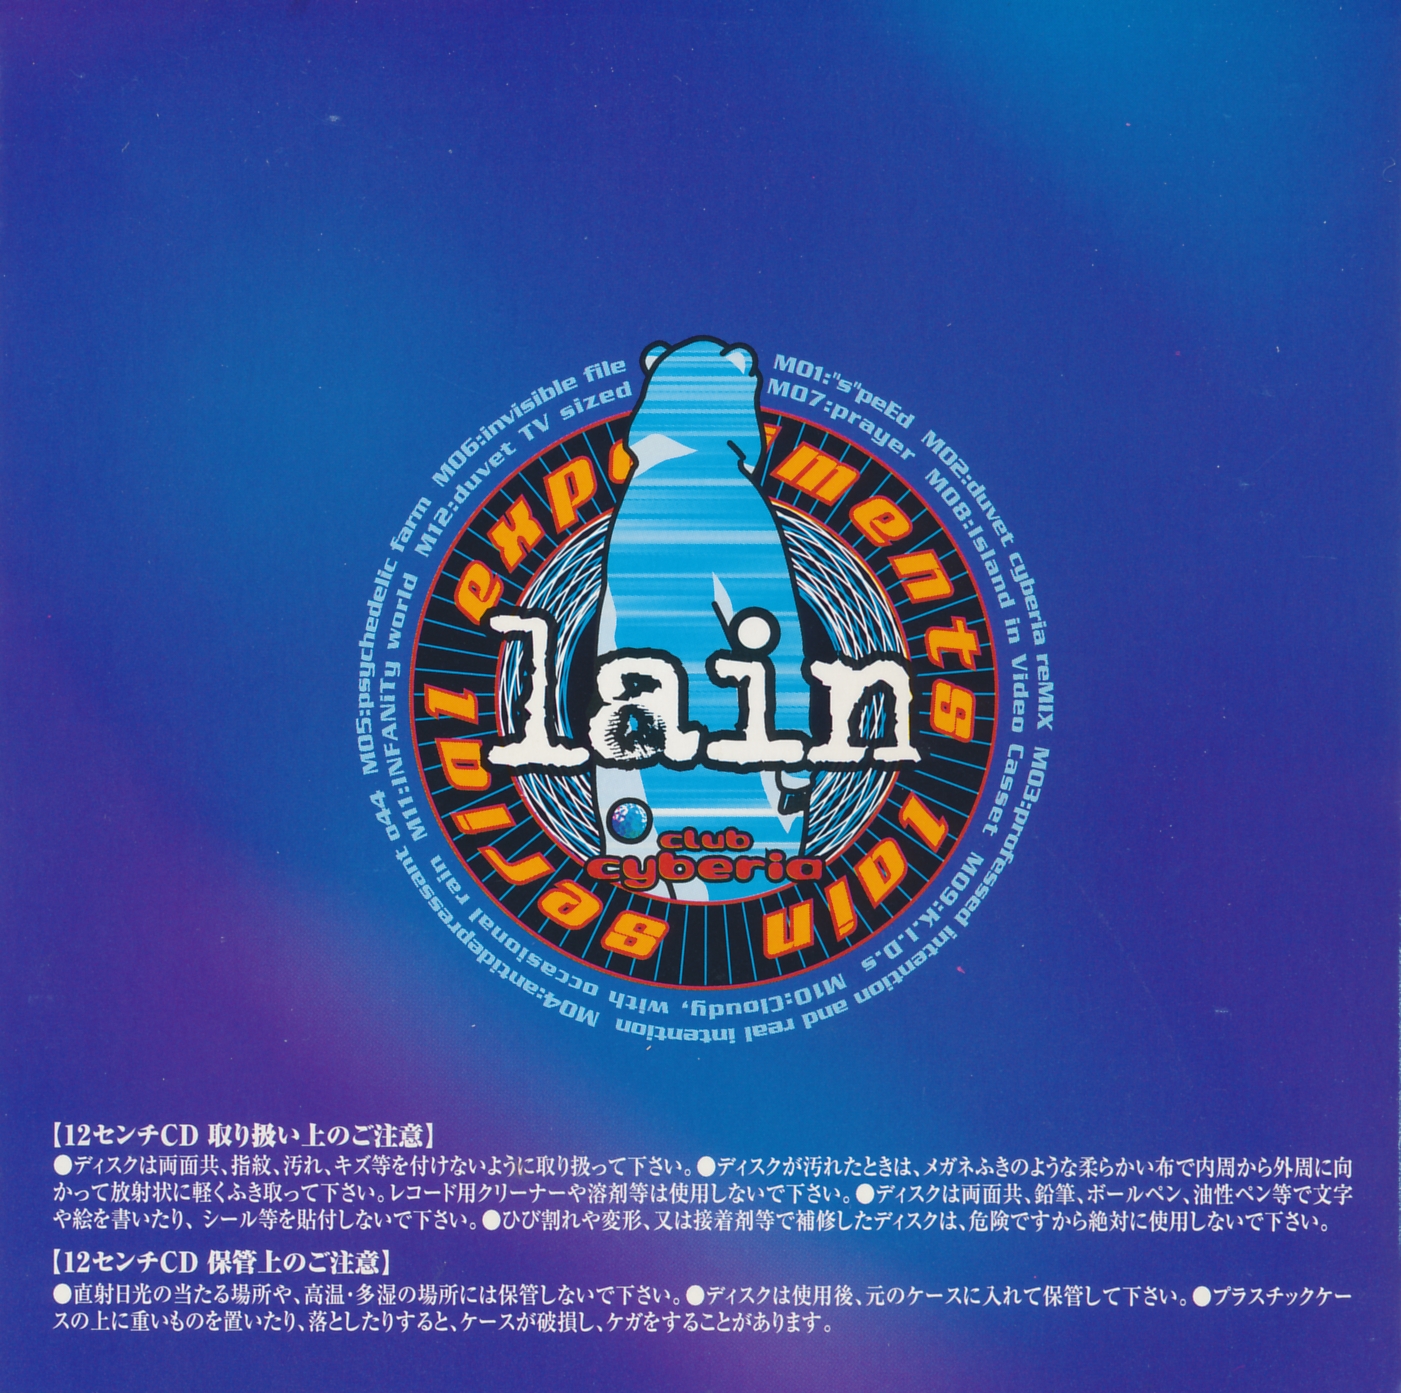 返品不可 - Serial Track JAPAN Experiments Lain Cyberia Mix Mix ...